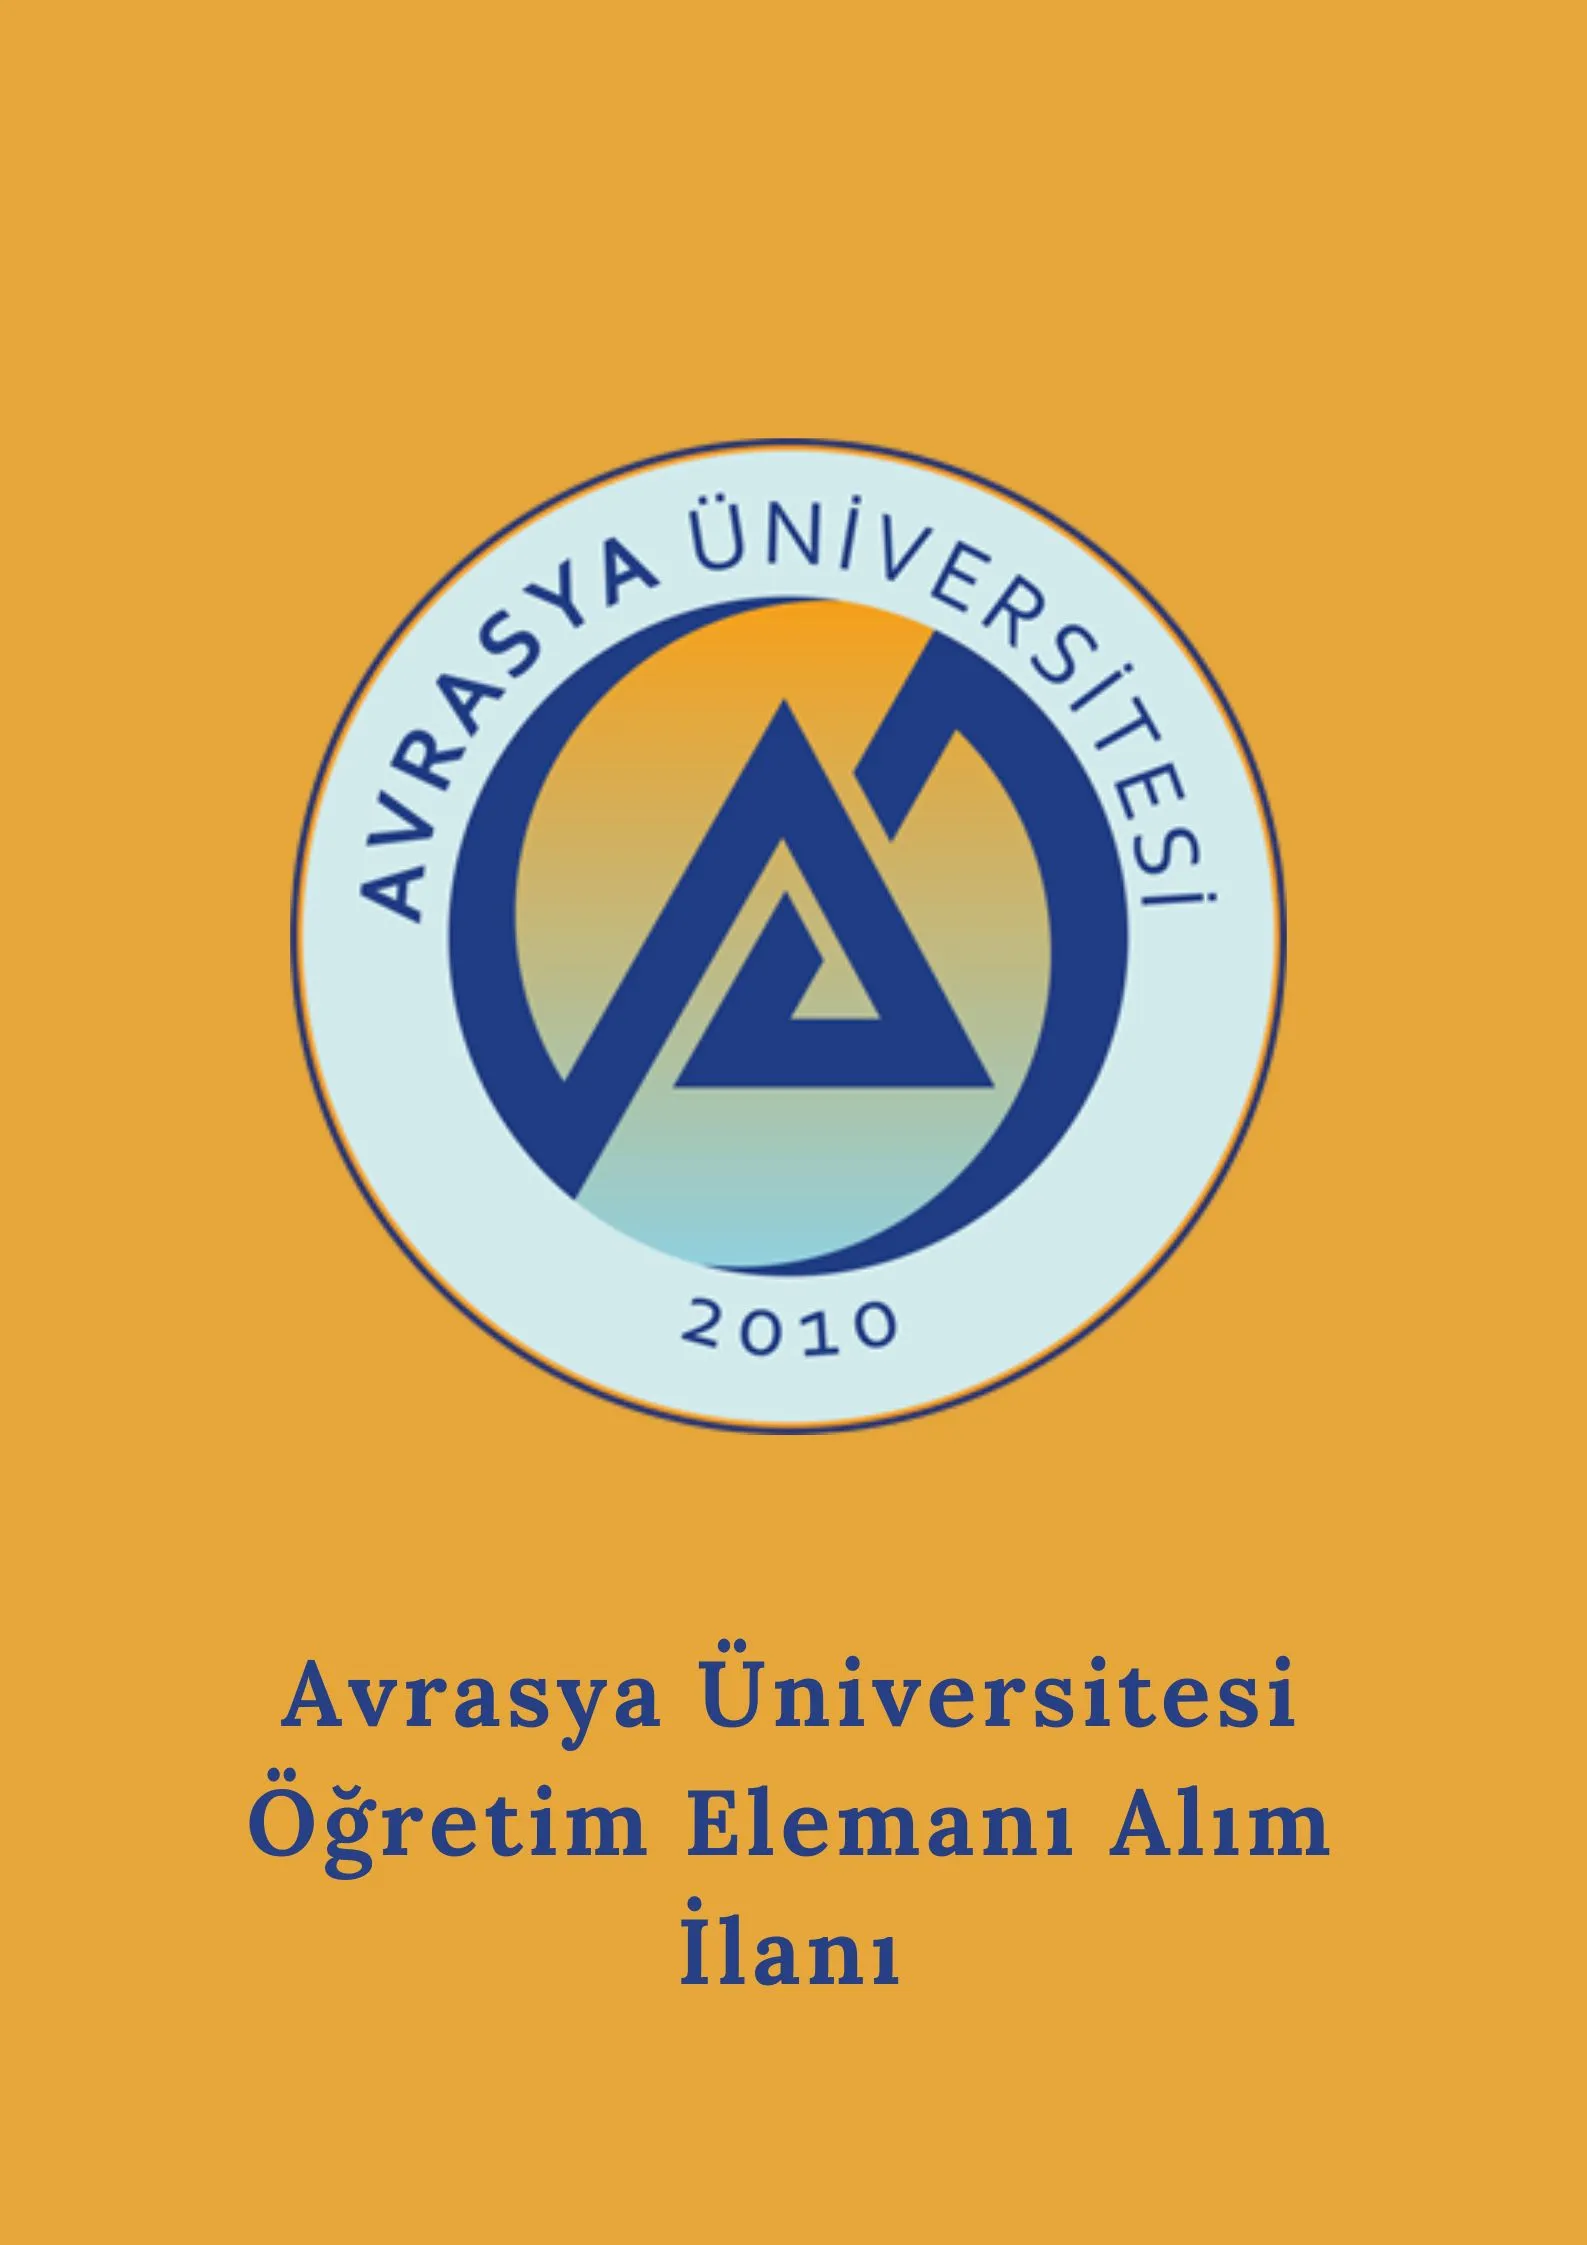 Avrasya Üniversitesi 3 Araştırma görevlisi, 17 Öğretim görevlisi ve  birçok alandan 58 Öğretim üyesi alacak.